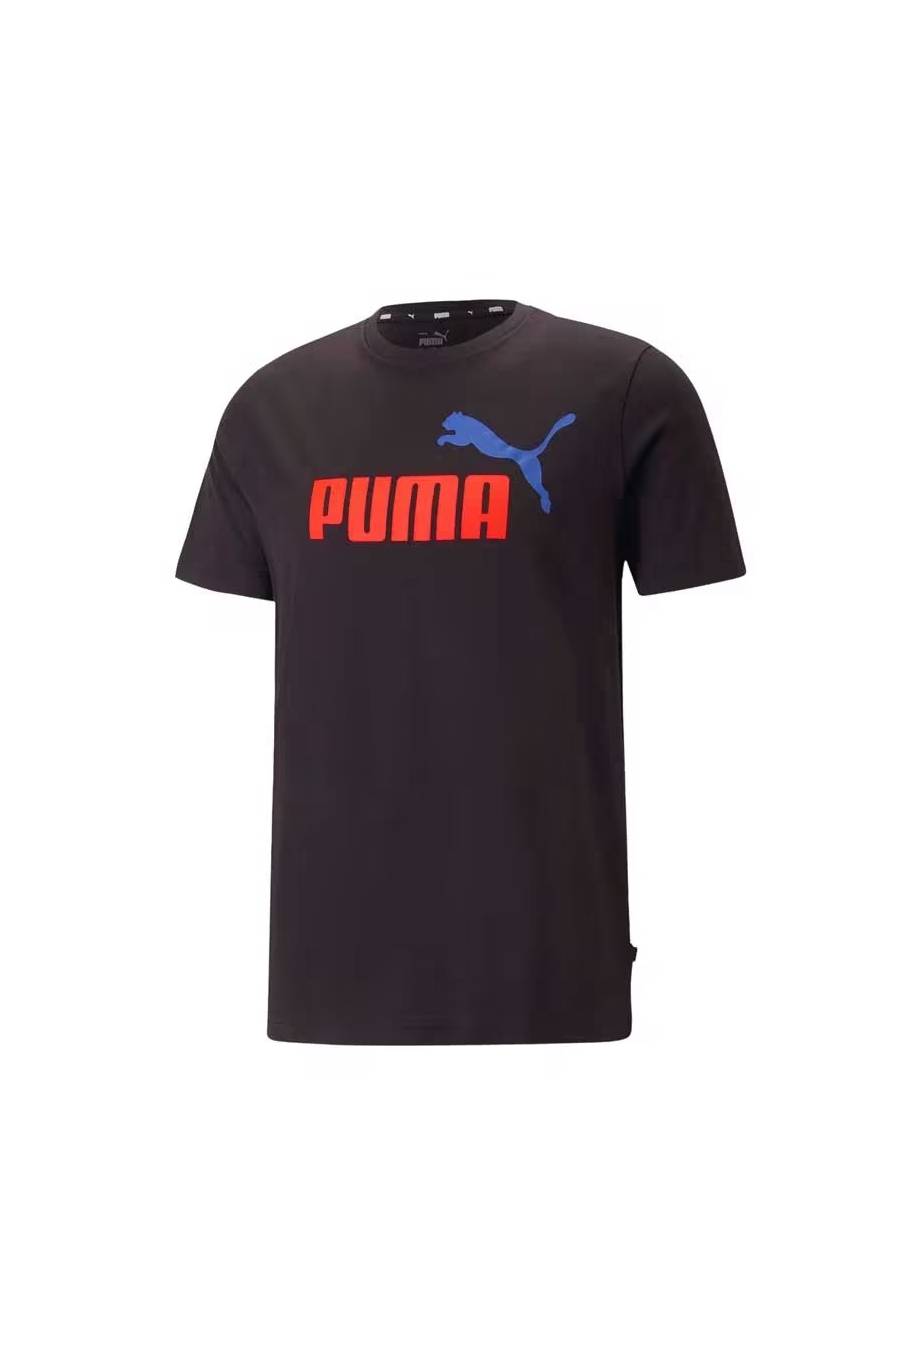 Camiseta Puma Essentials 2 586759-62